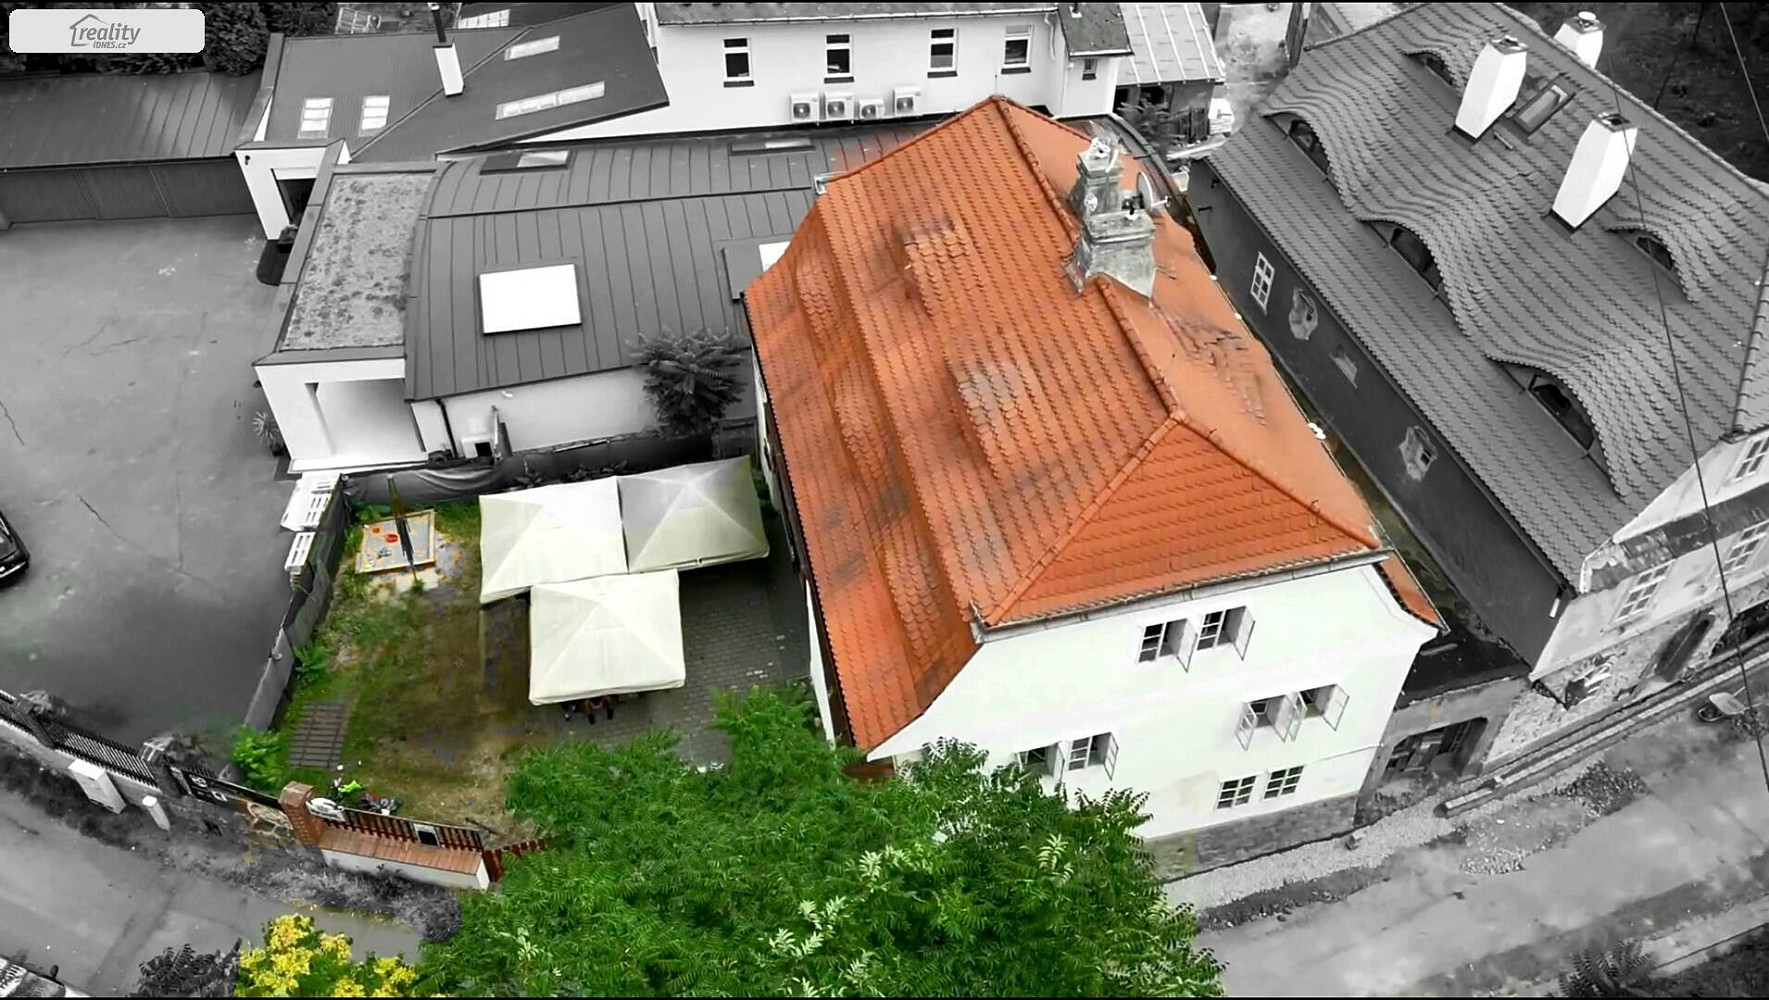 U Sv. Rocha, Plzeň - Severní Předměstí